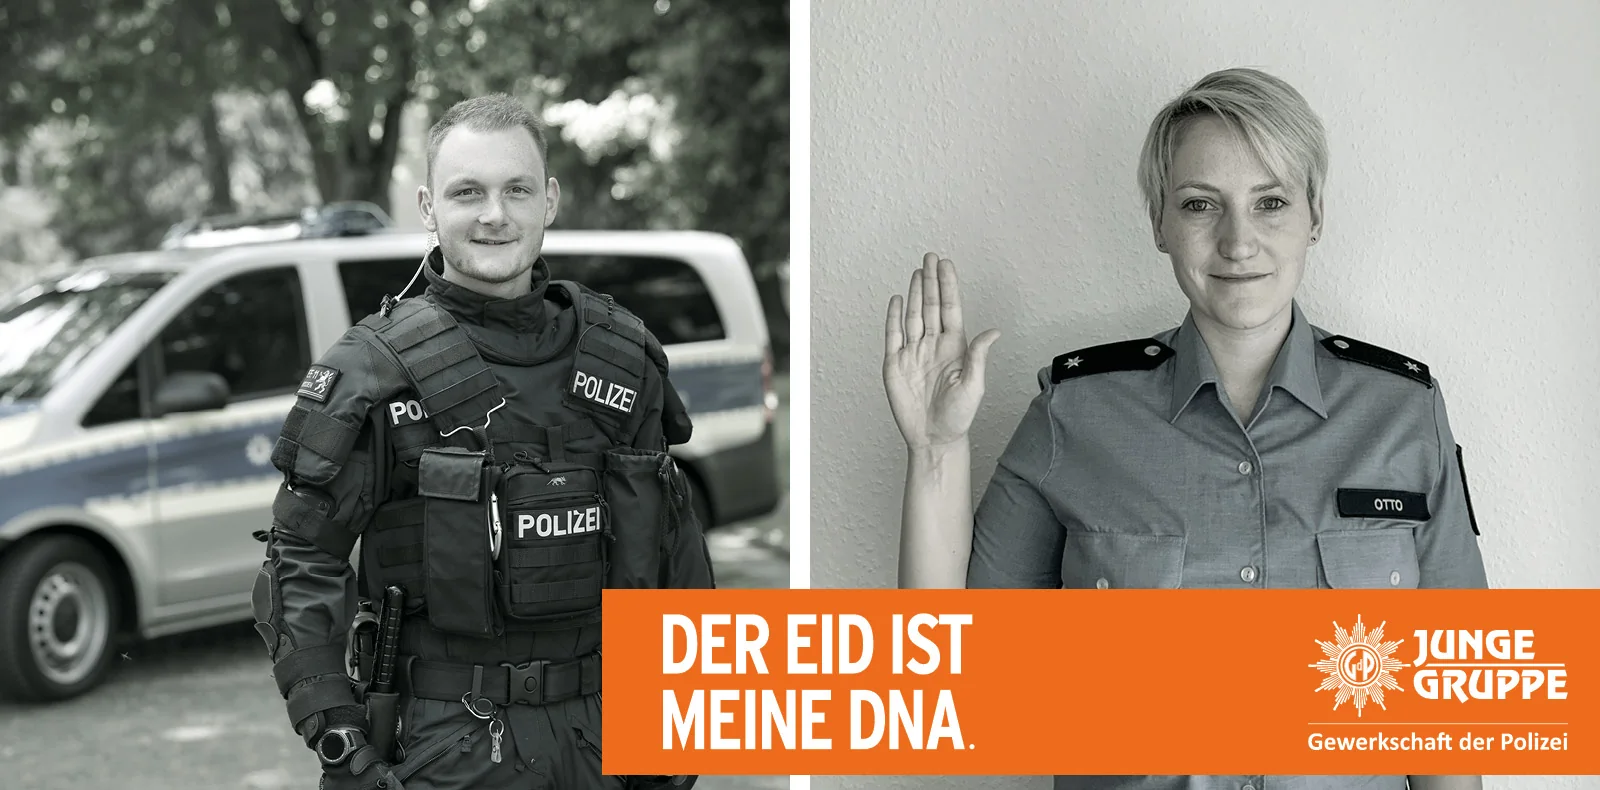 Personen Plakat 2 der Kampagne Unser Eid und dargestelltem Schriftzug "Der Eid ist meine DNA".